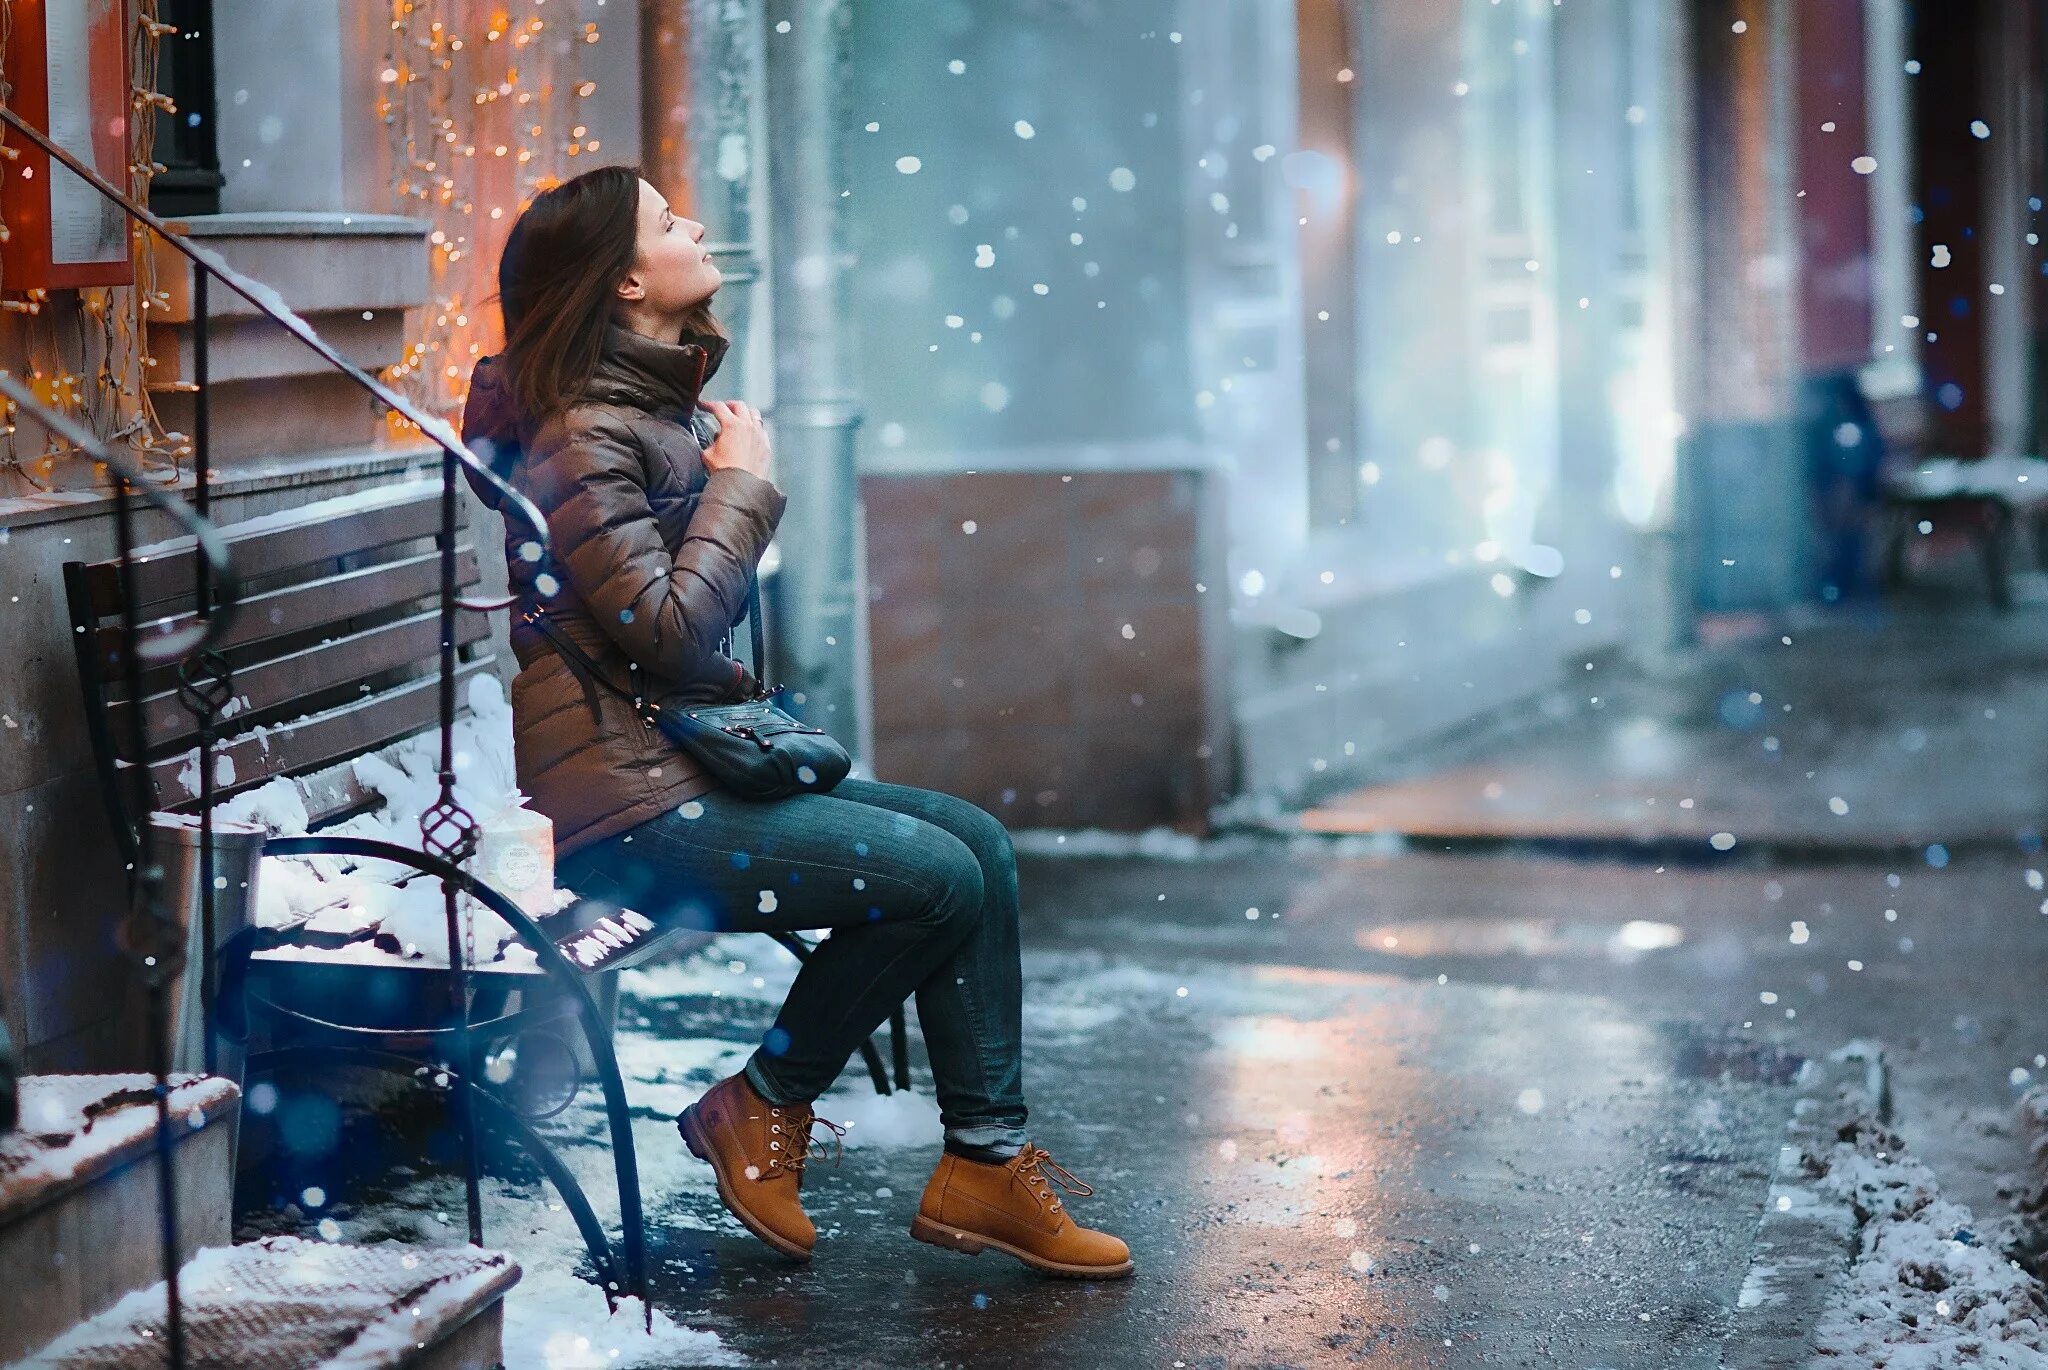 Девушка зима. Фотосессия в городе зимой. Девушка зимой в городе. Девушка в снегу. На улице снег на душе